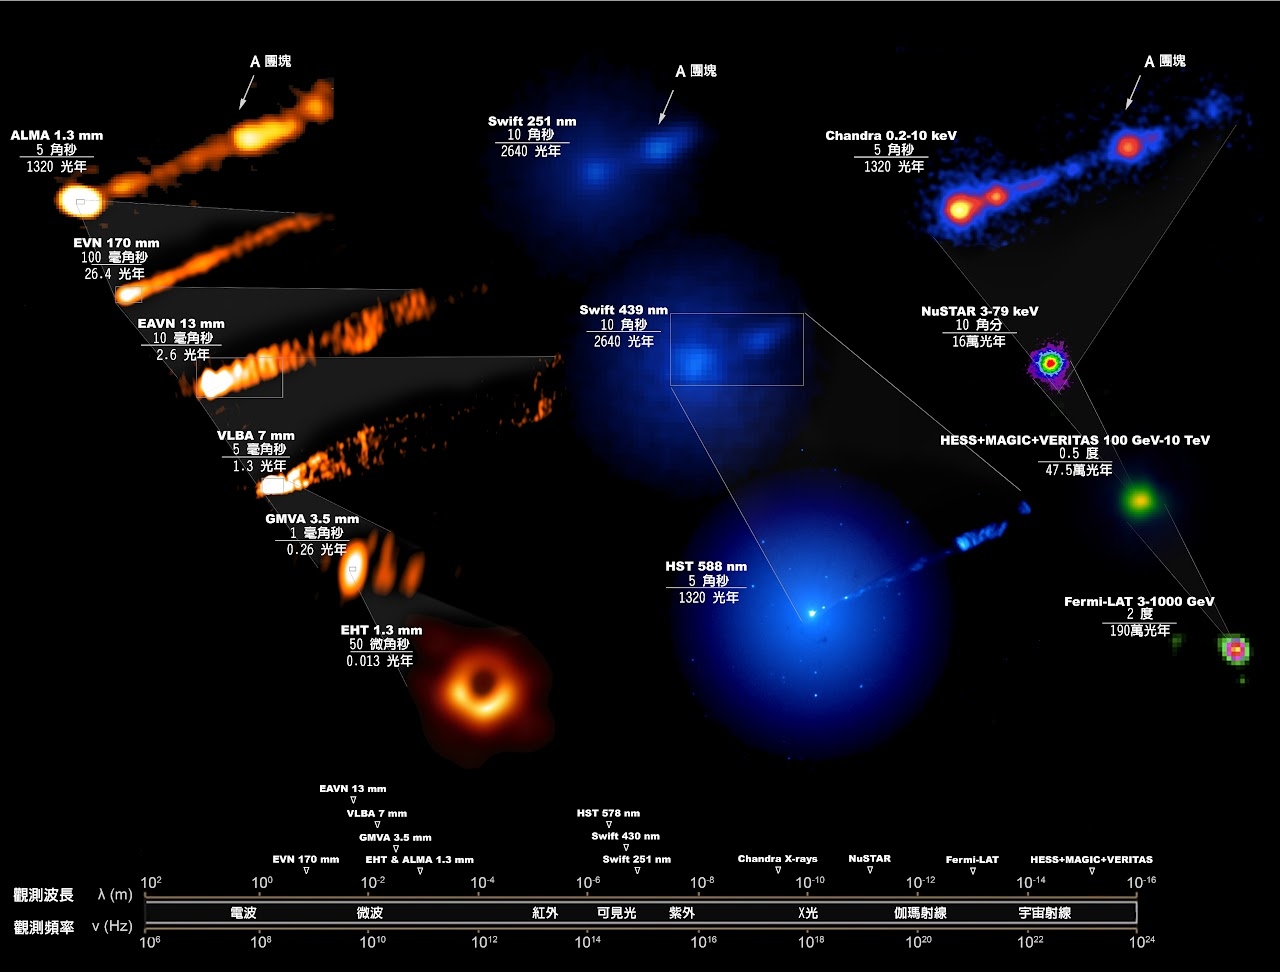 圖片為 M87 黑洞的多波段影像。EHT 拍到黑洞事件視界附近的「甜甜圈」影像，而其他波段的望遠鏡則拍到黑洞附近狹長而筆直的噴流。 資料來源│中研院天文所 